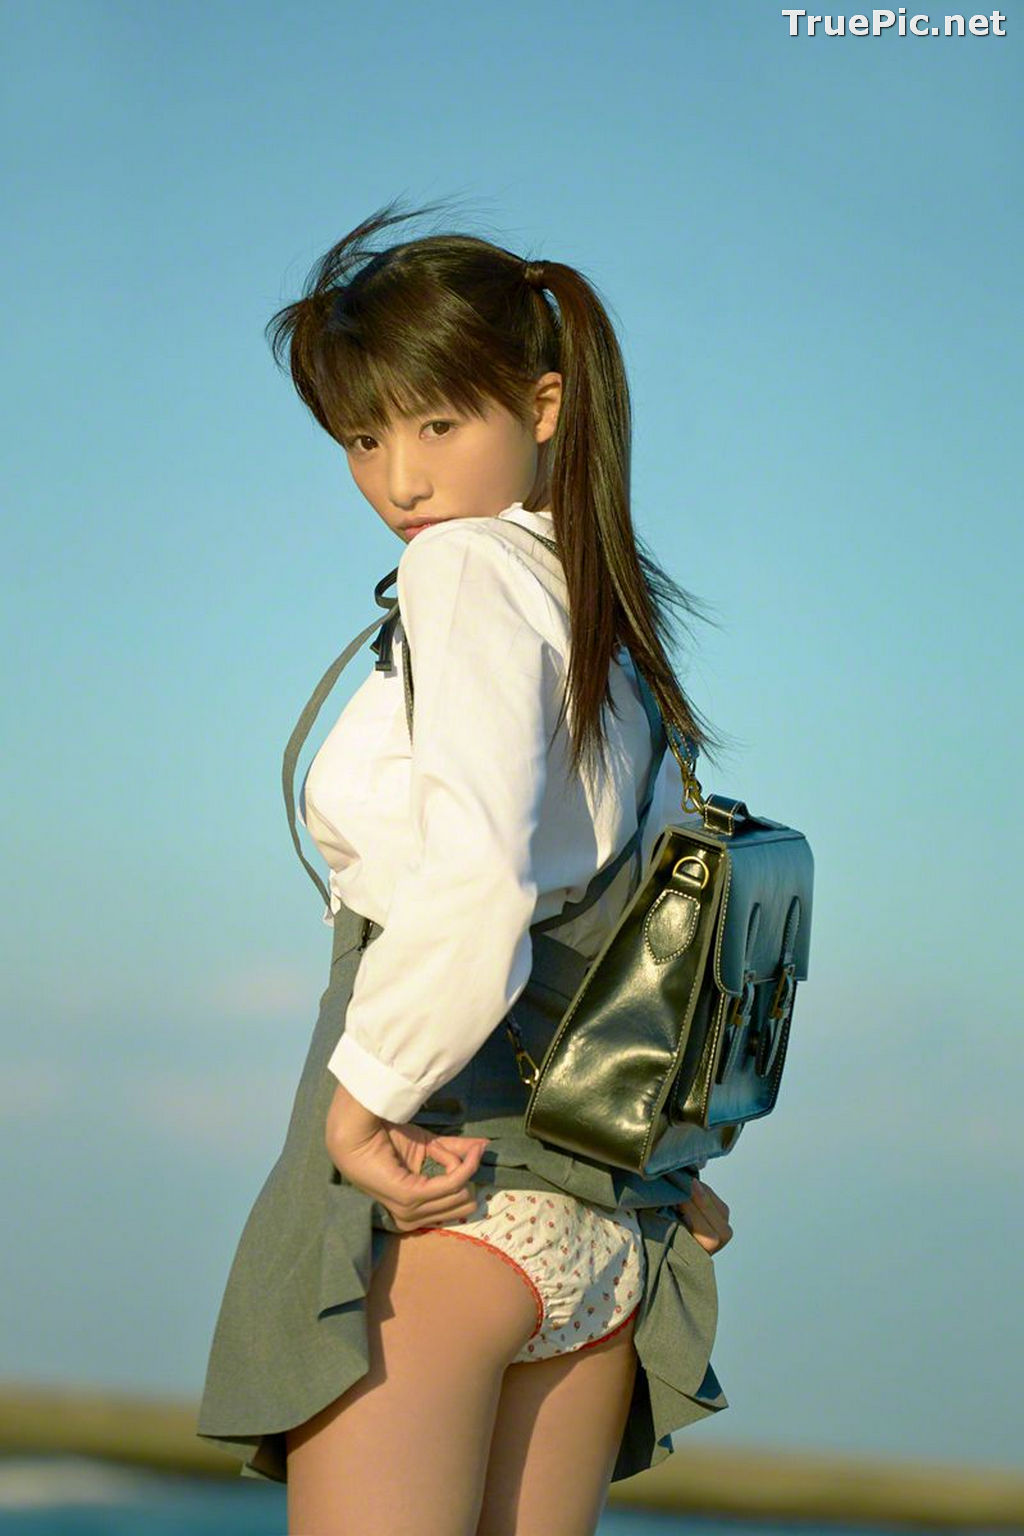 Image Wanibooks No.133 - Japanese Model and Singer - Hikari Shiina - TruePic.net - Picture-17